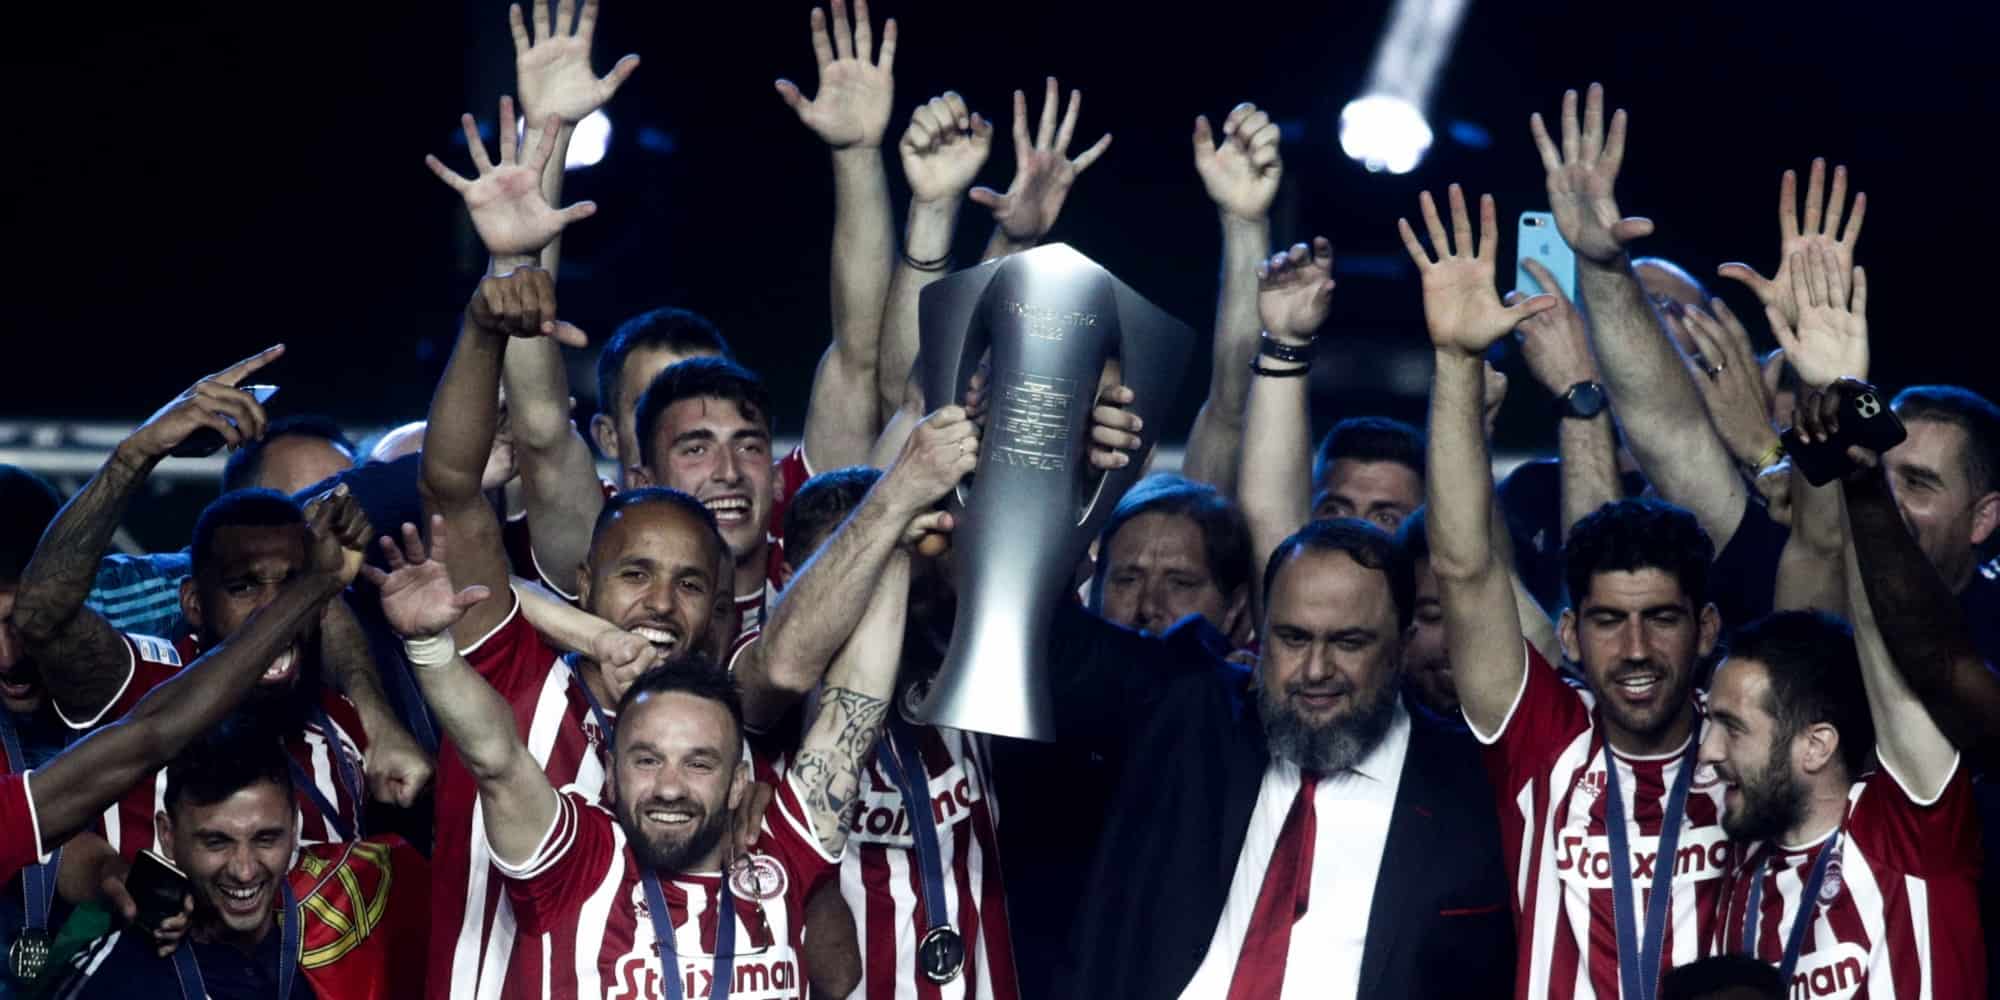 Ο Βαγγέλης Μαρινάκης σηκώνει το πρωτάθλημα με τους παίκτες του Ολυμπιακού